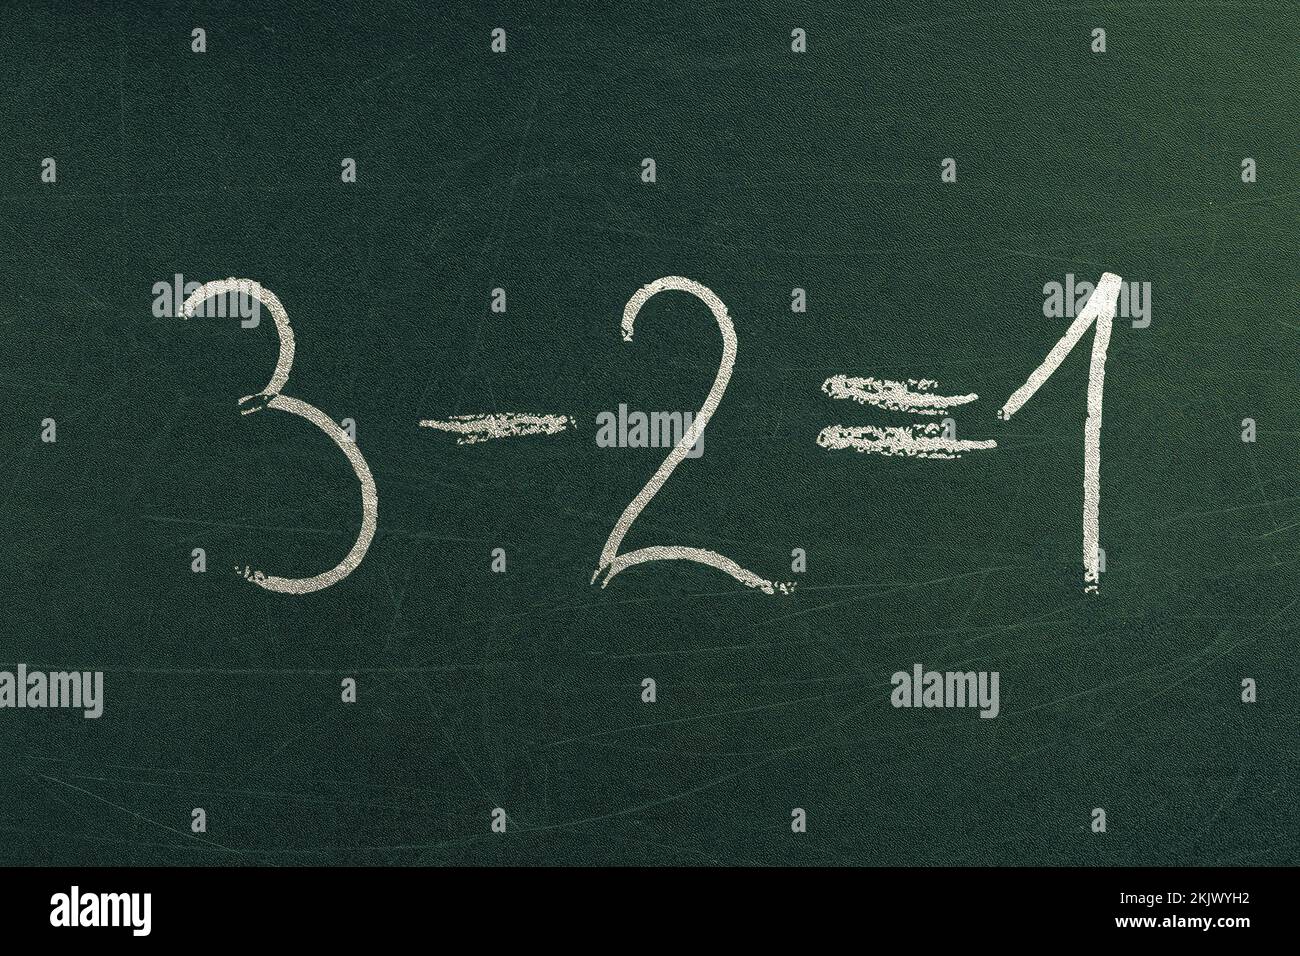 Einfache mathematische Gleichung 3 minus 2 ergibt 1. Mathematikunterricht und Schulformeln. Handgeschrieben auf Tafel Stockfoto